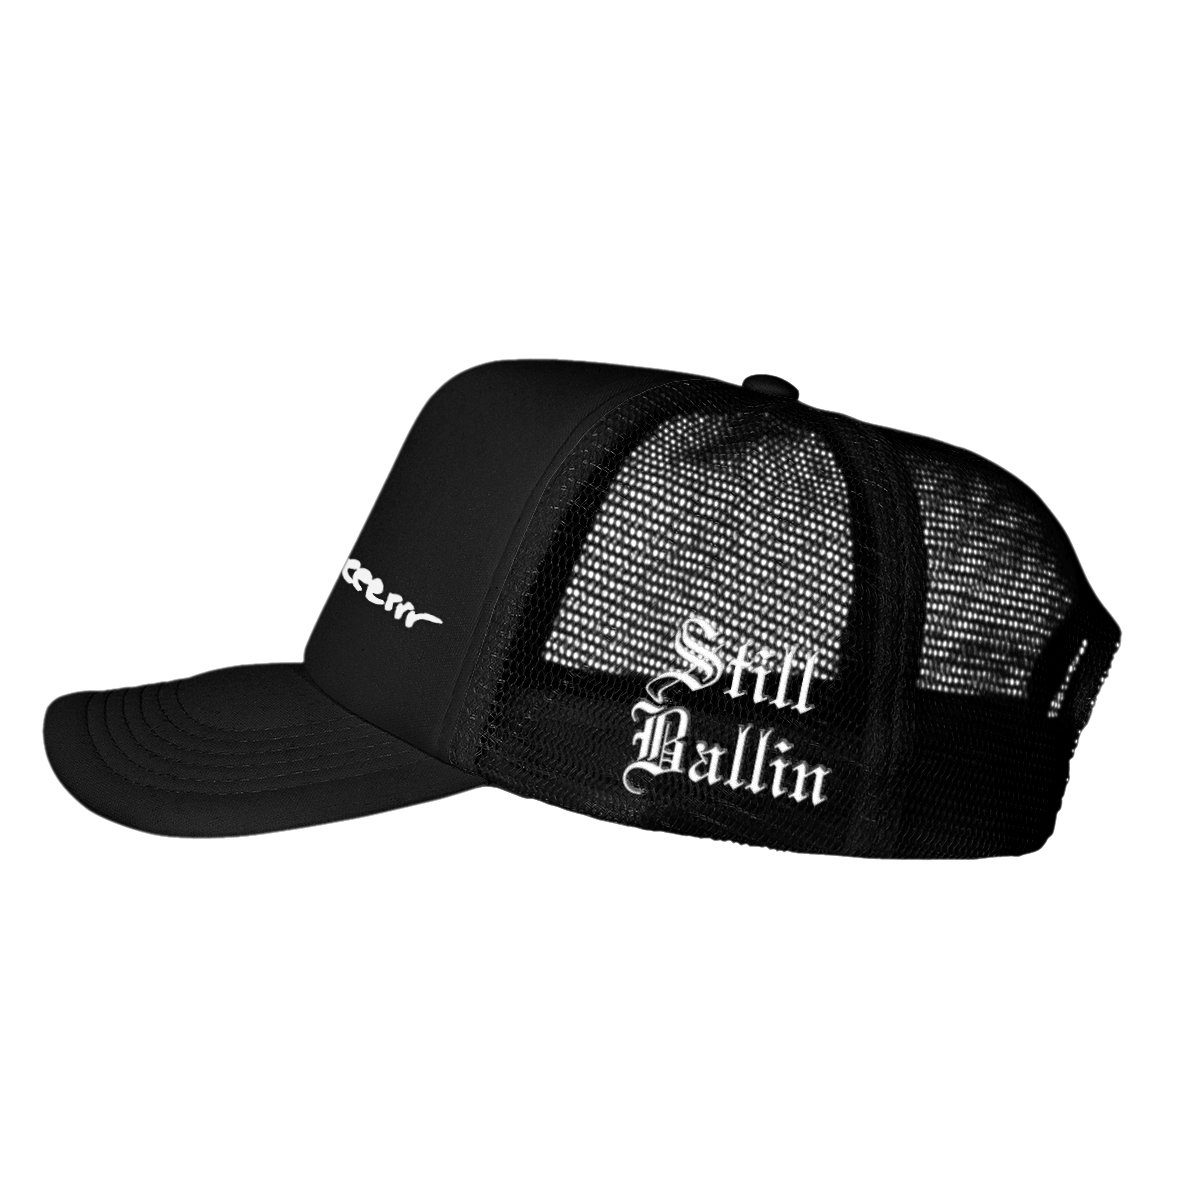 Takeover Still Ballin Hats - Taylor J